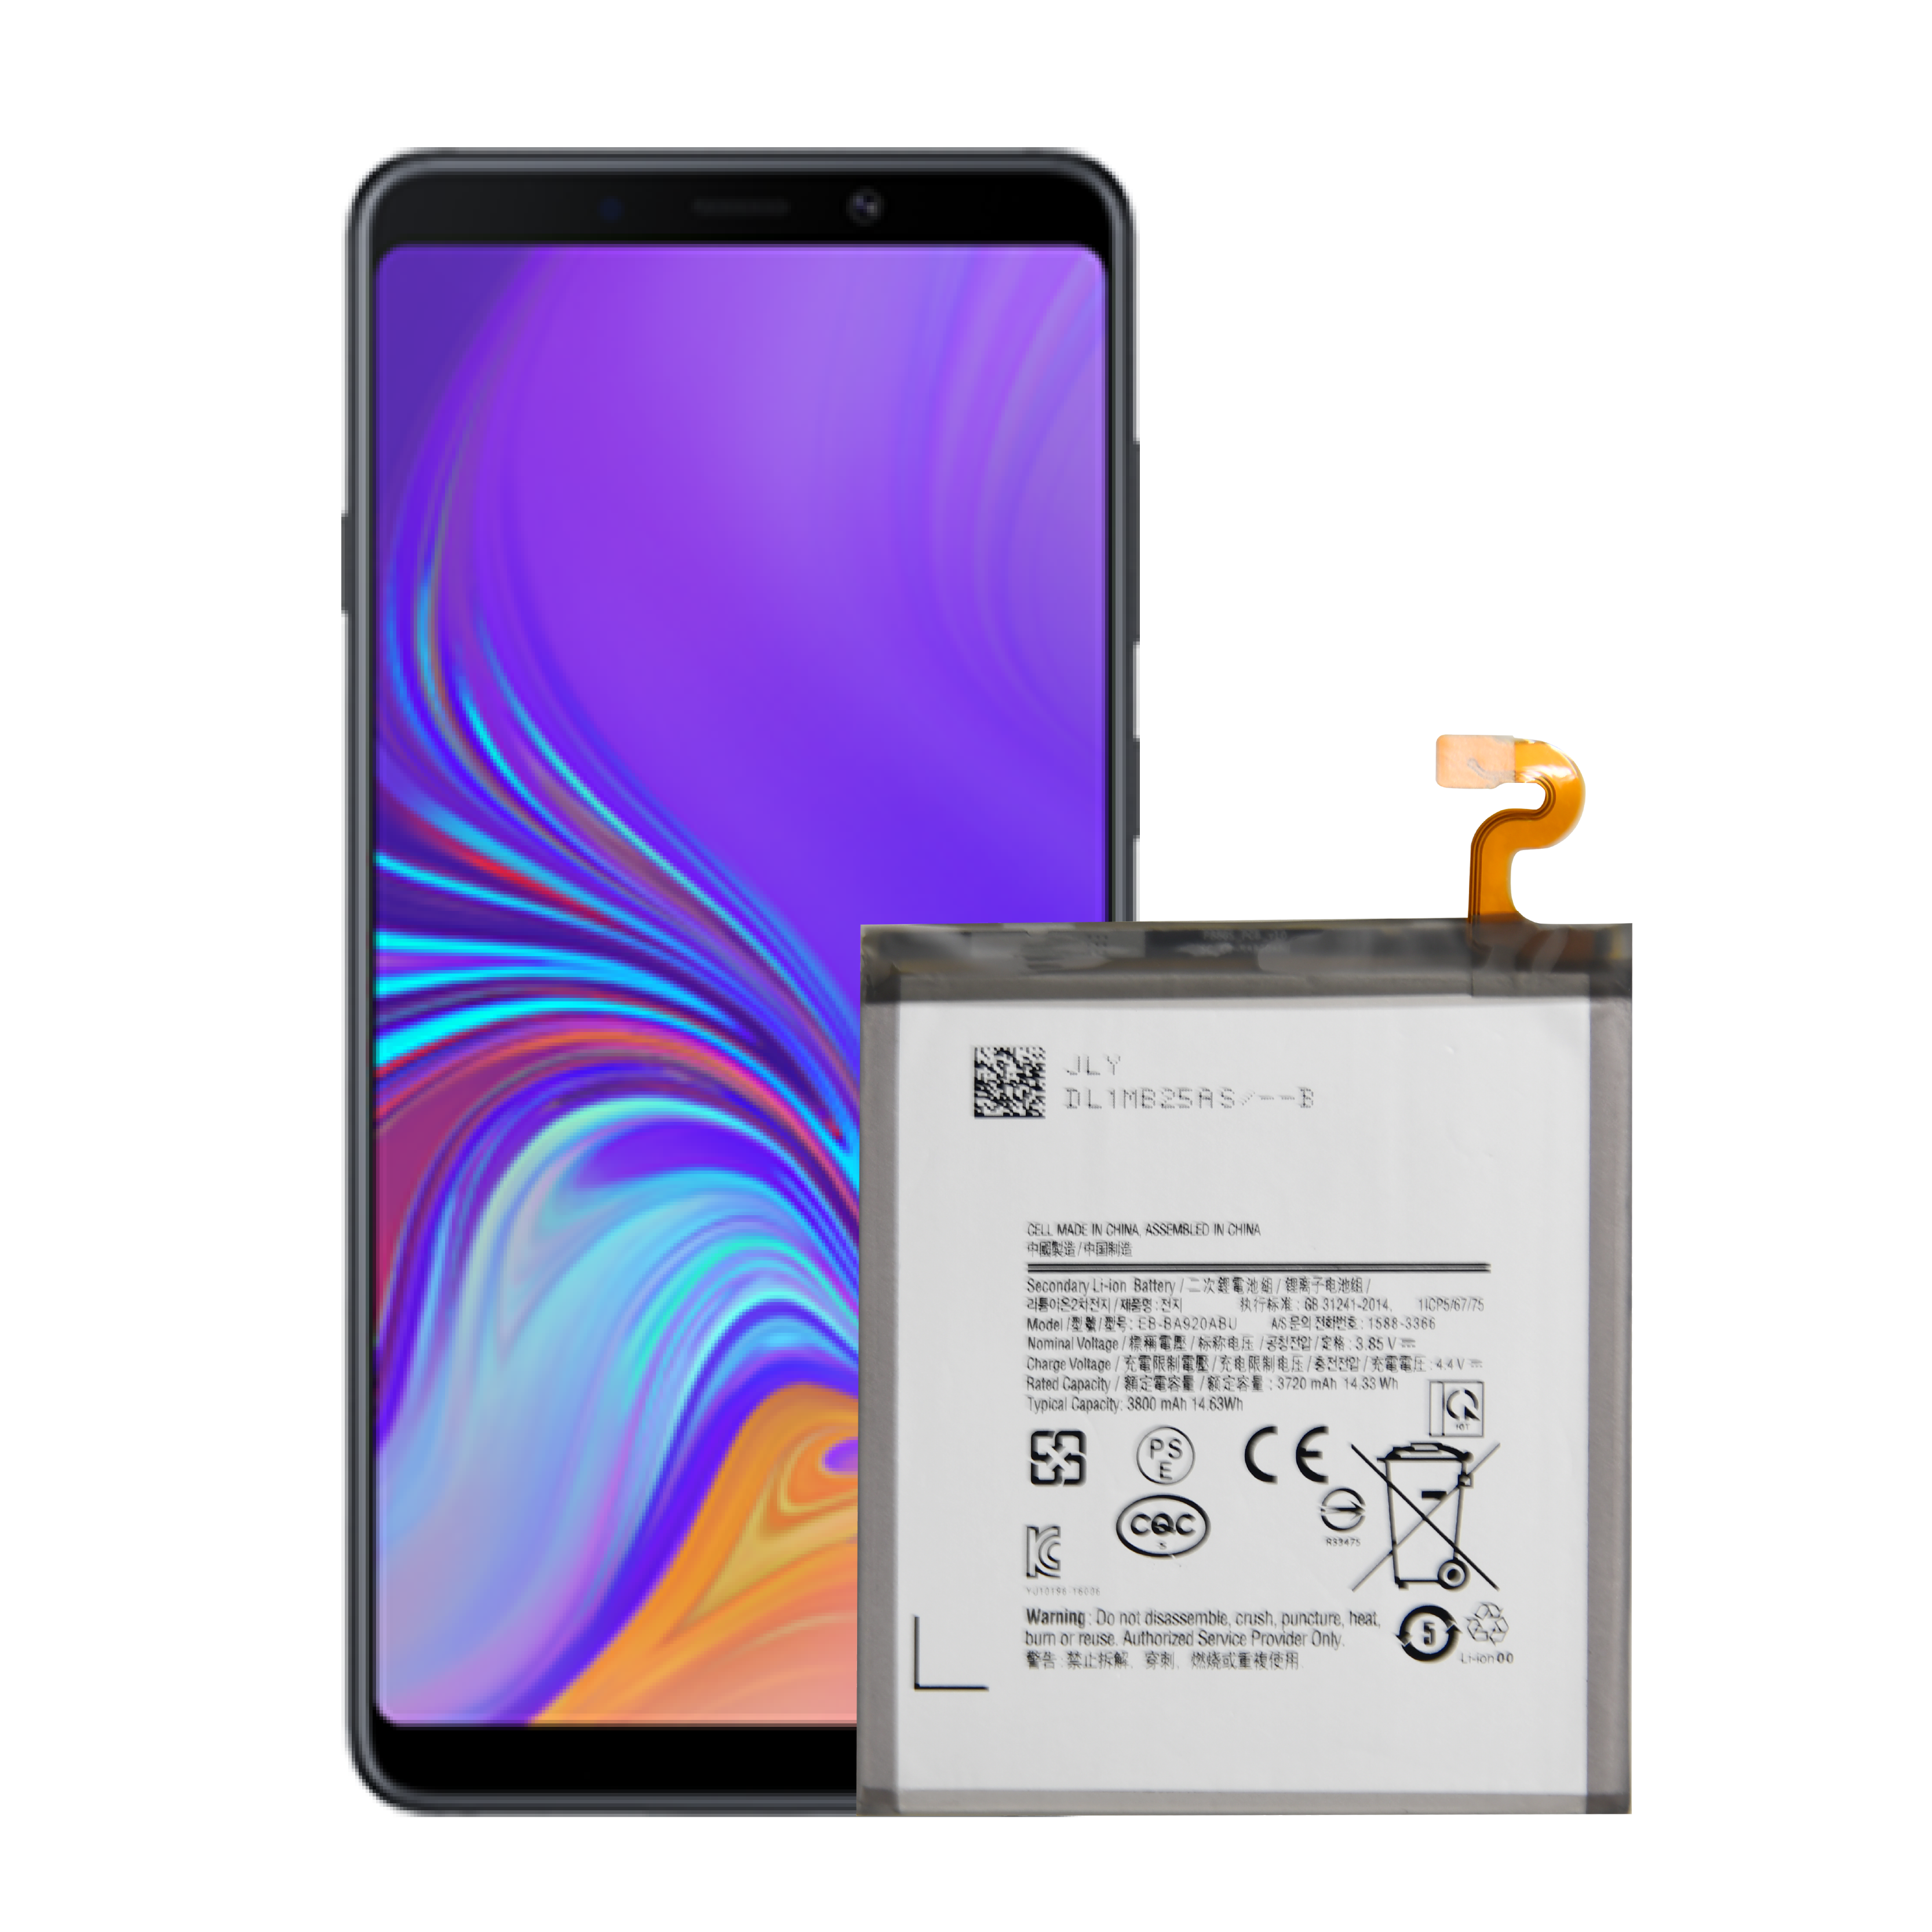 Kalitate handiko OEM eskuragarri dago telefono mugikorren ordezko bateria berria Samsung Galaxy A9 2018 bateriarentzat